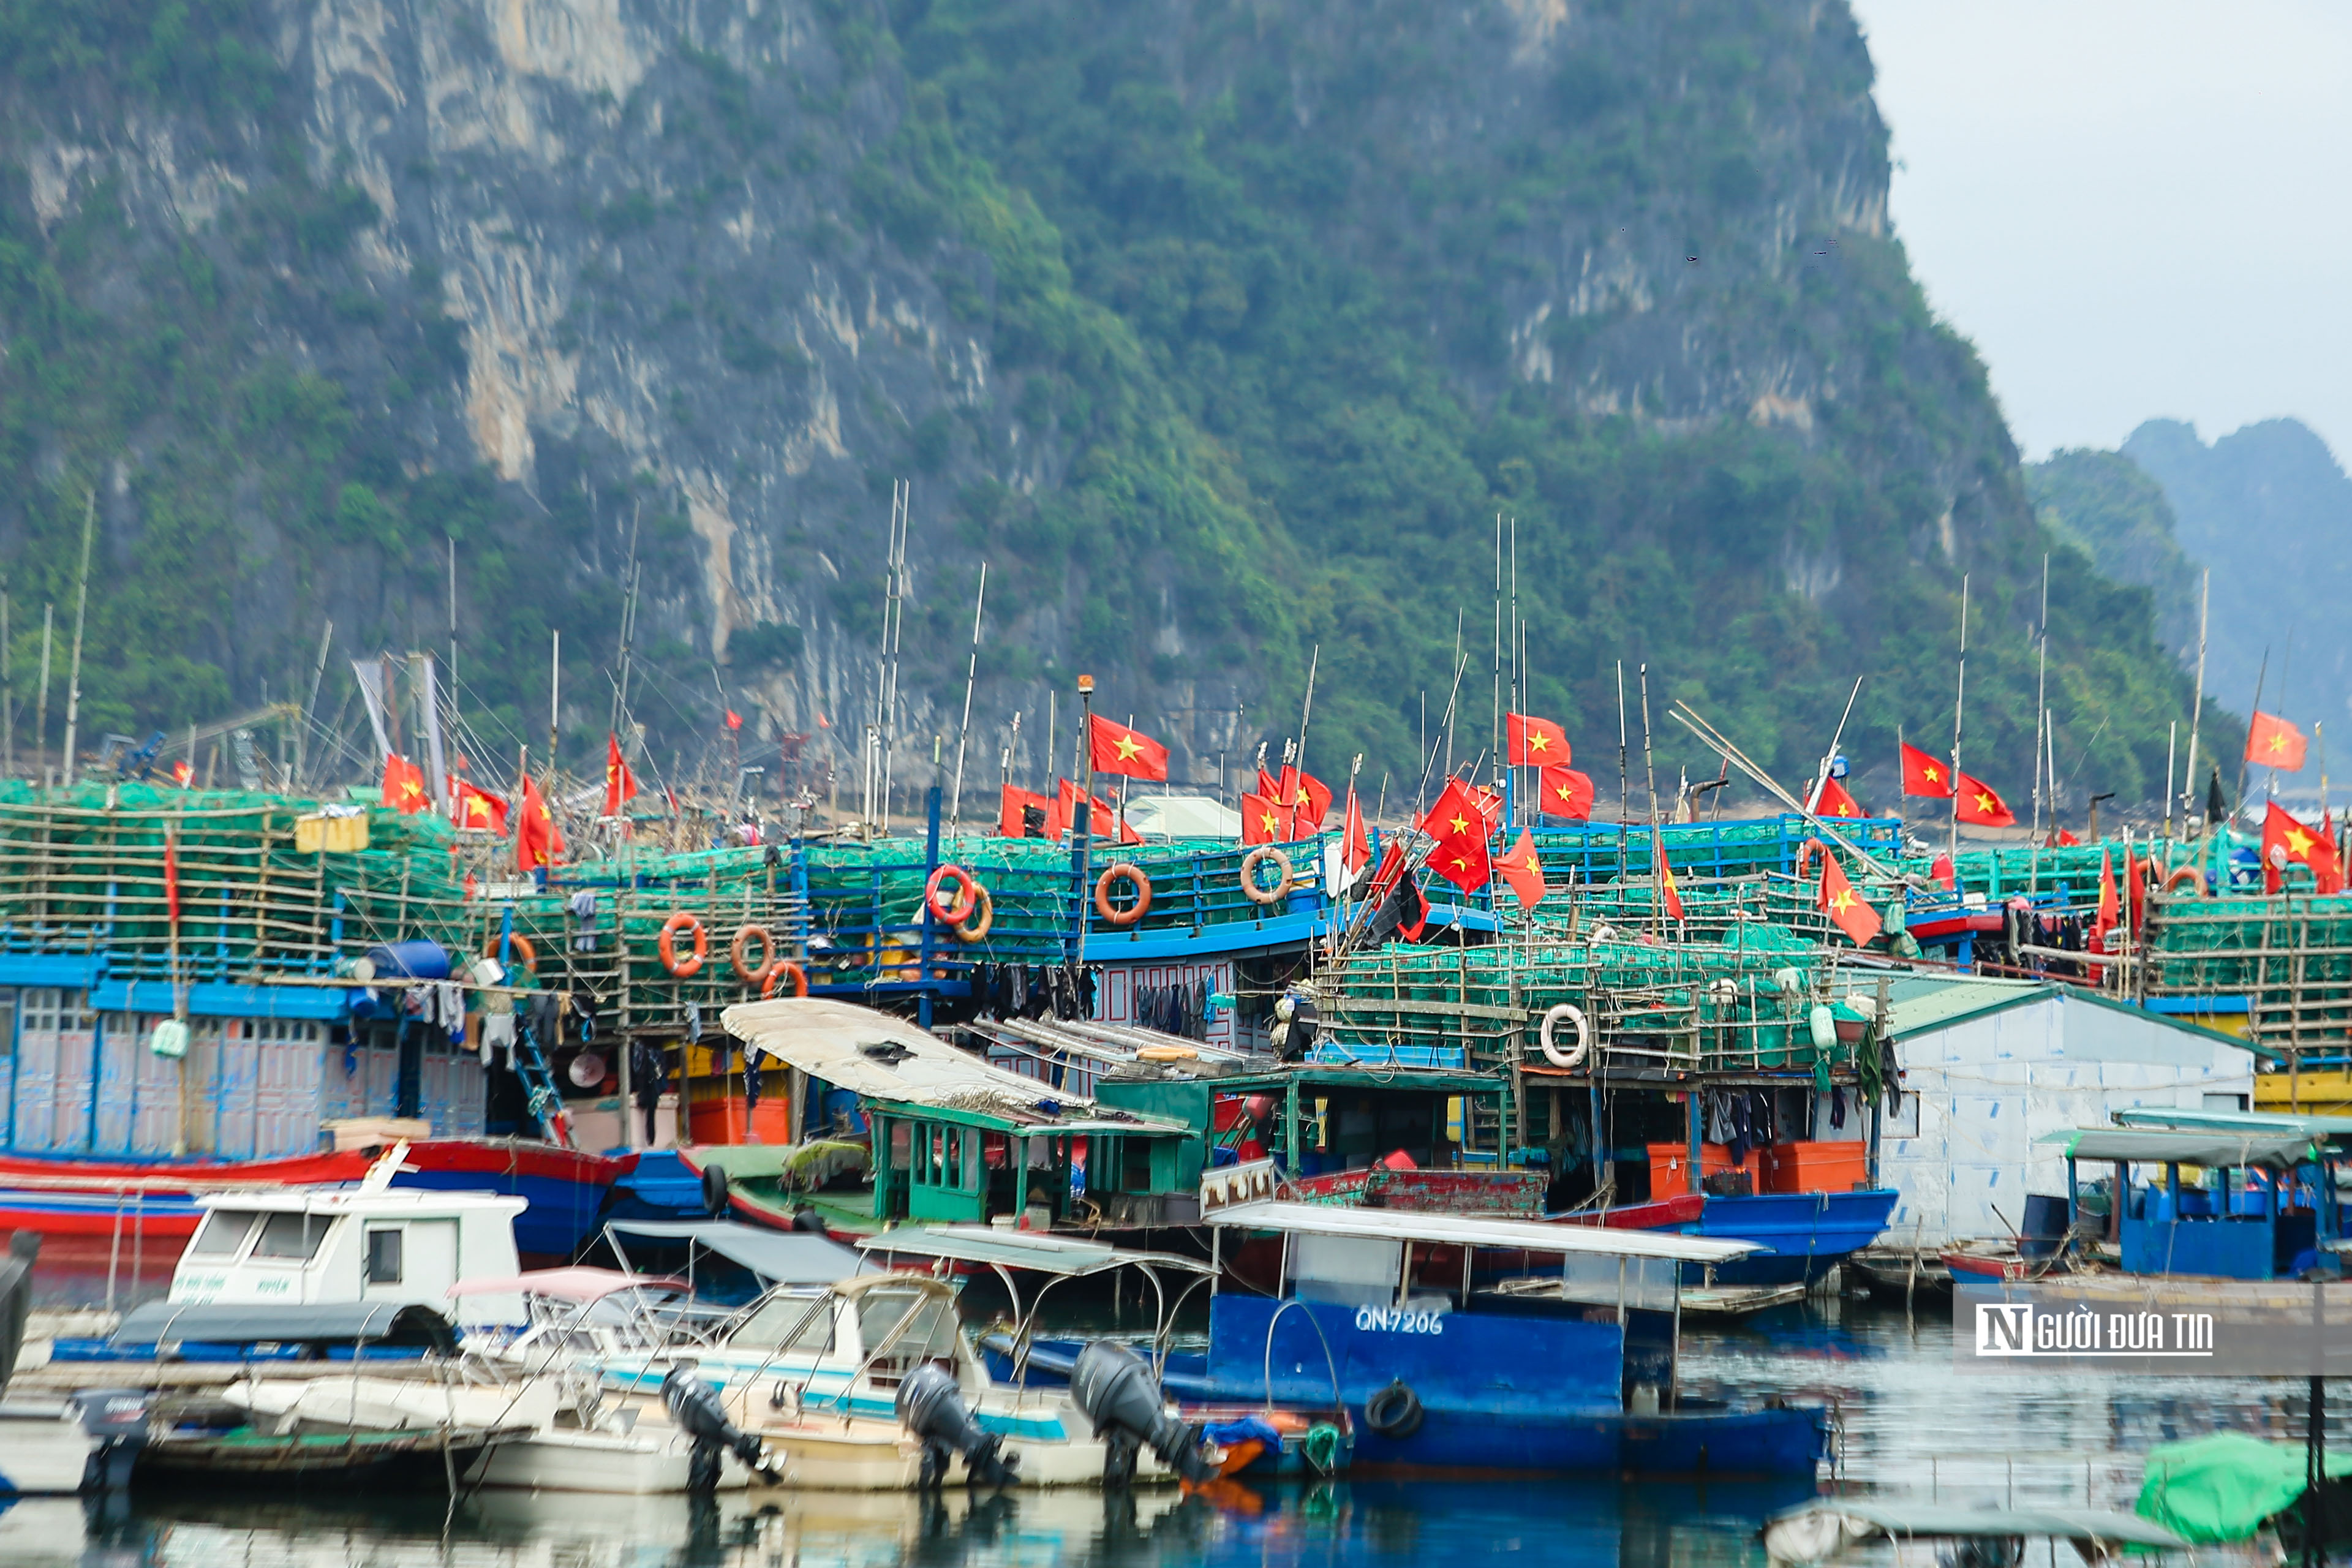 Chính sách - Xử lý dứt điểm hành vi đưa tàu cá Việt Nam đi khai thác bất hợp pháp